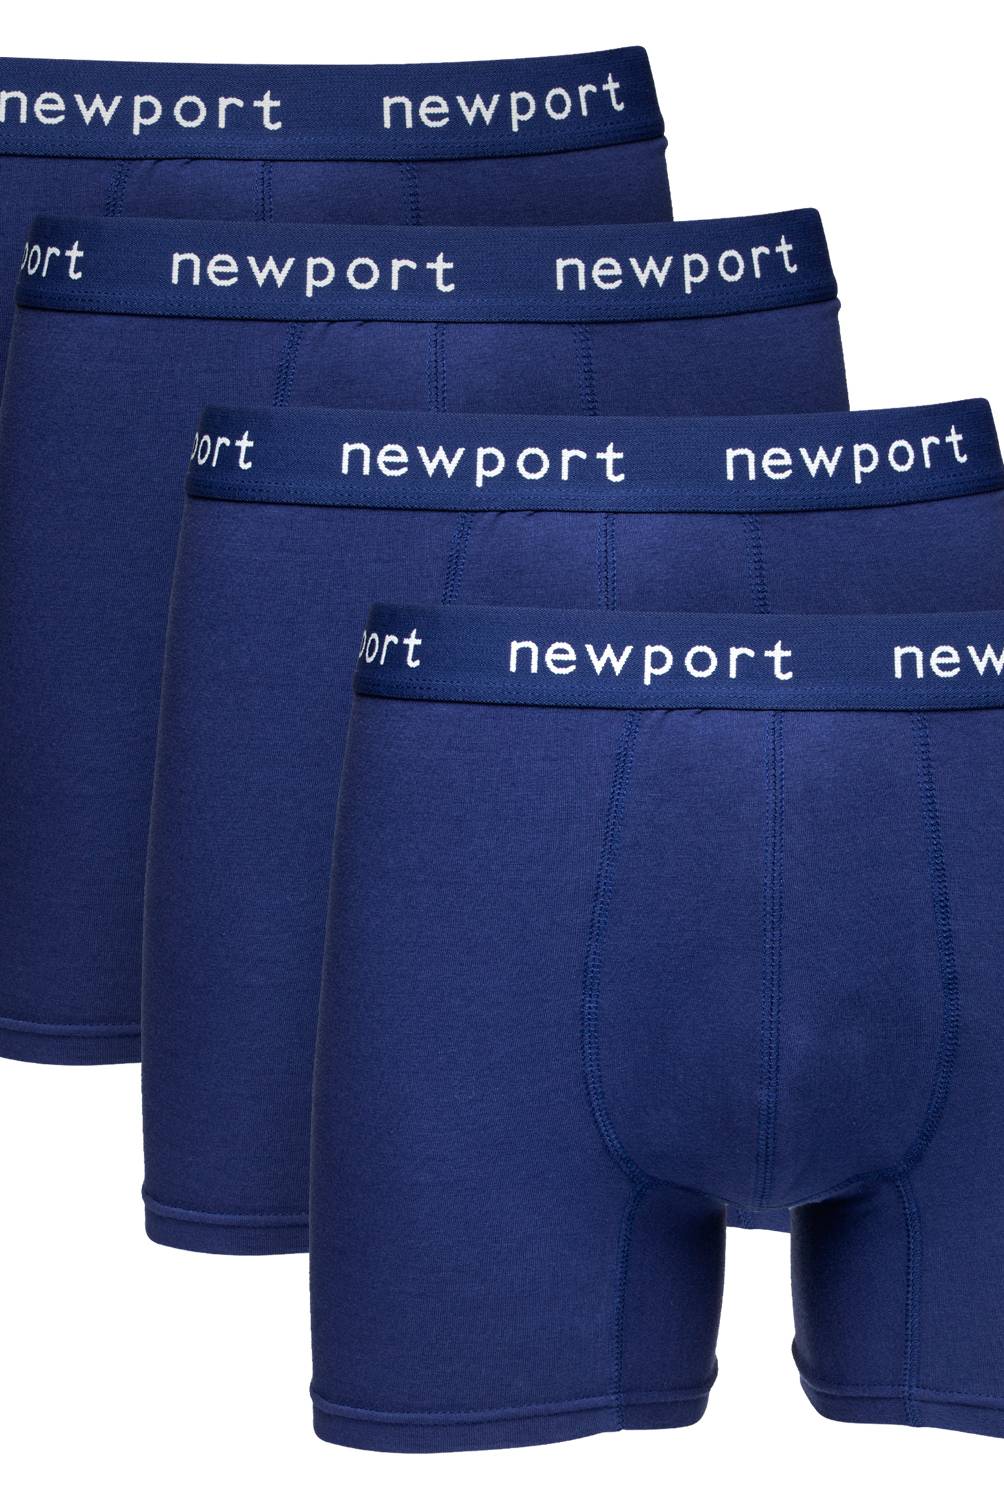 NEWPORT - Pack de 4 Boxer de Algodón Hombre